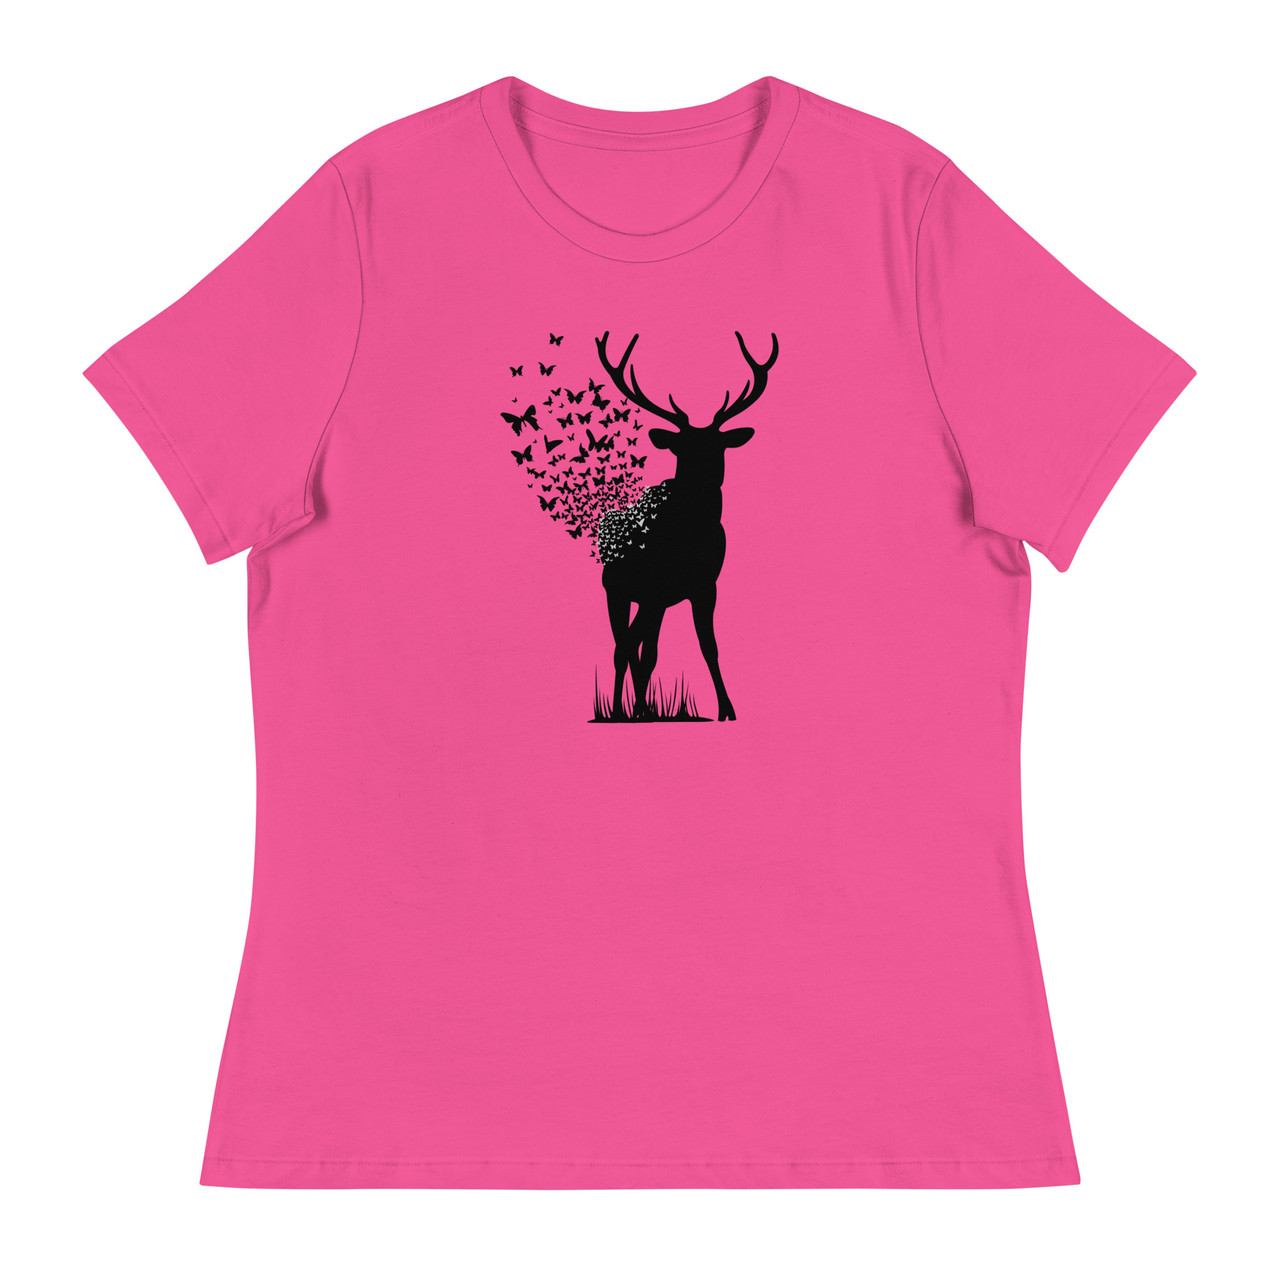 Deer Butterfly Women's Relaxed T-Shirt - Bella + Canvas 6400 